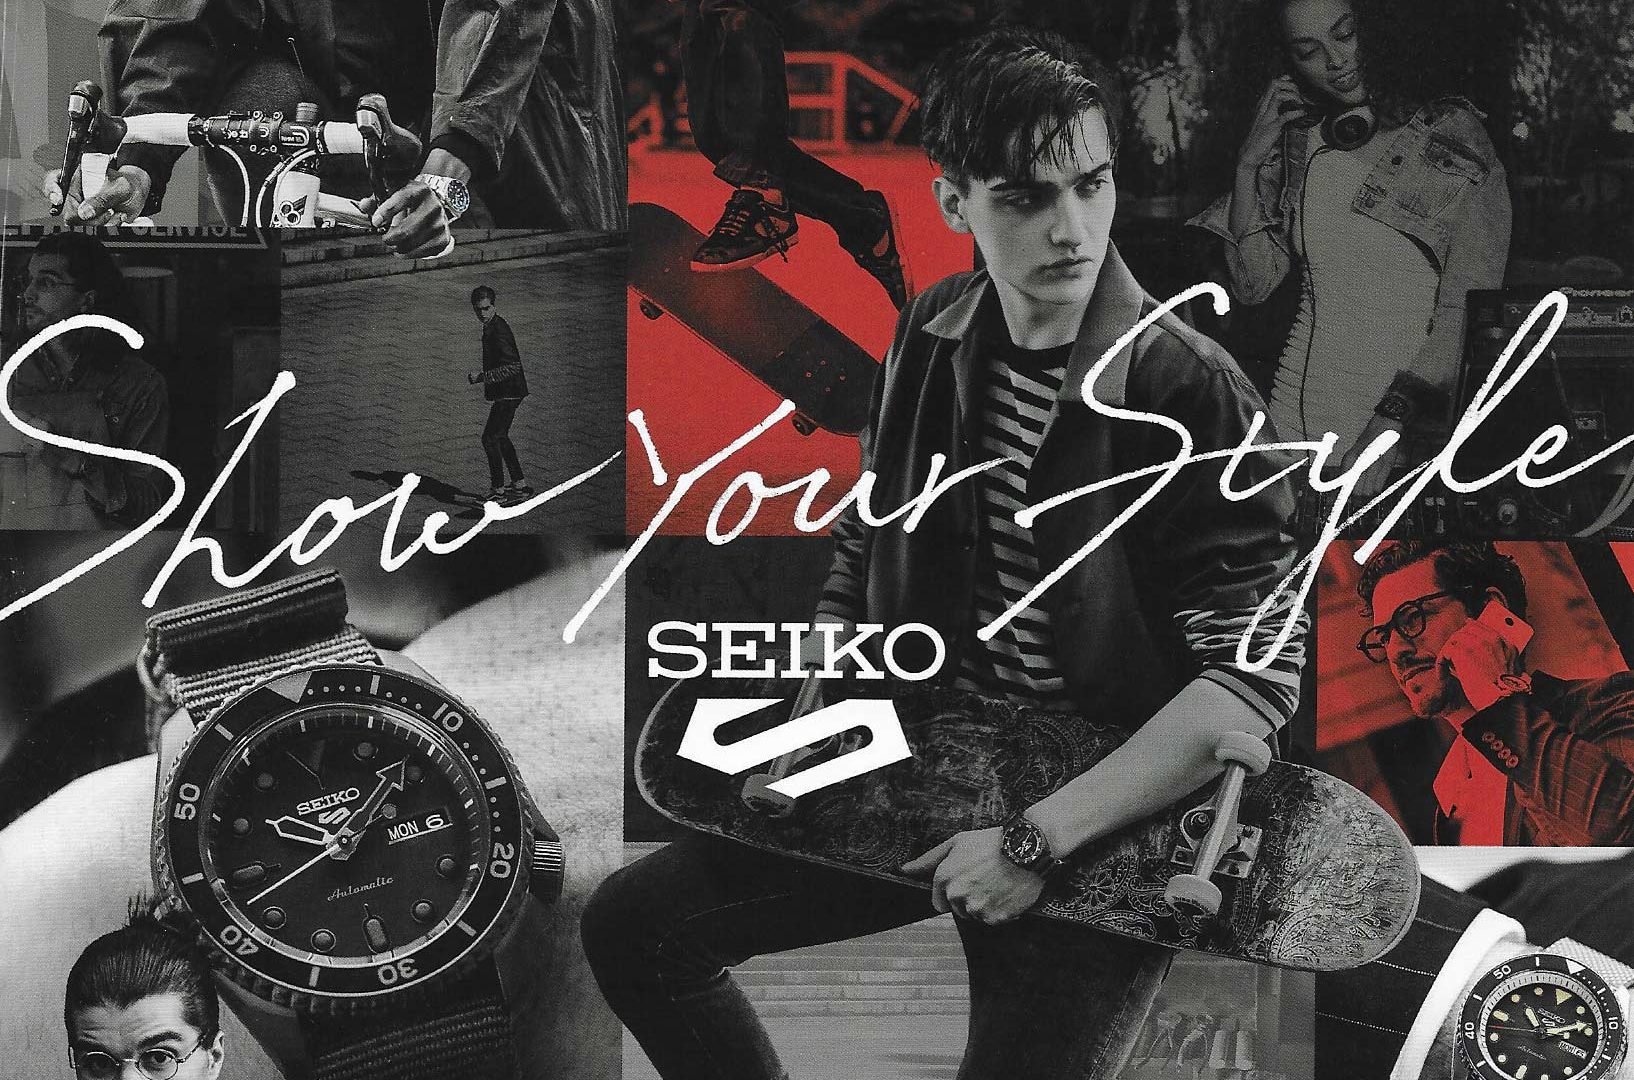 SEIKO 5 - Show your style